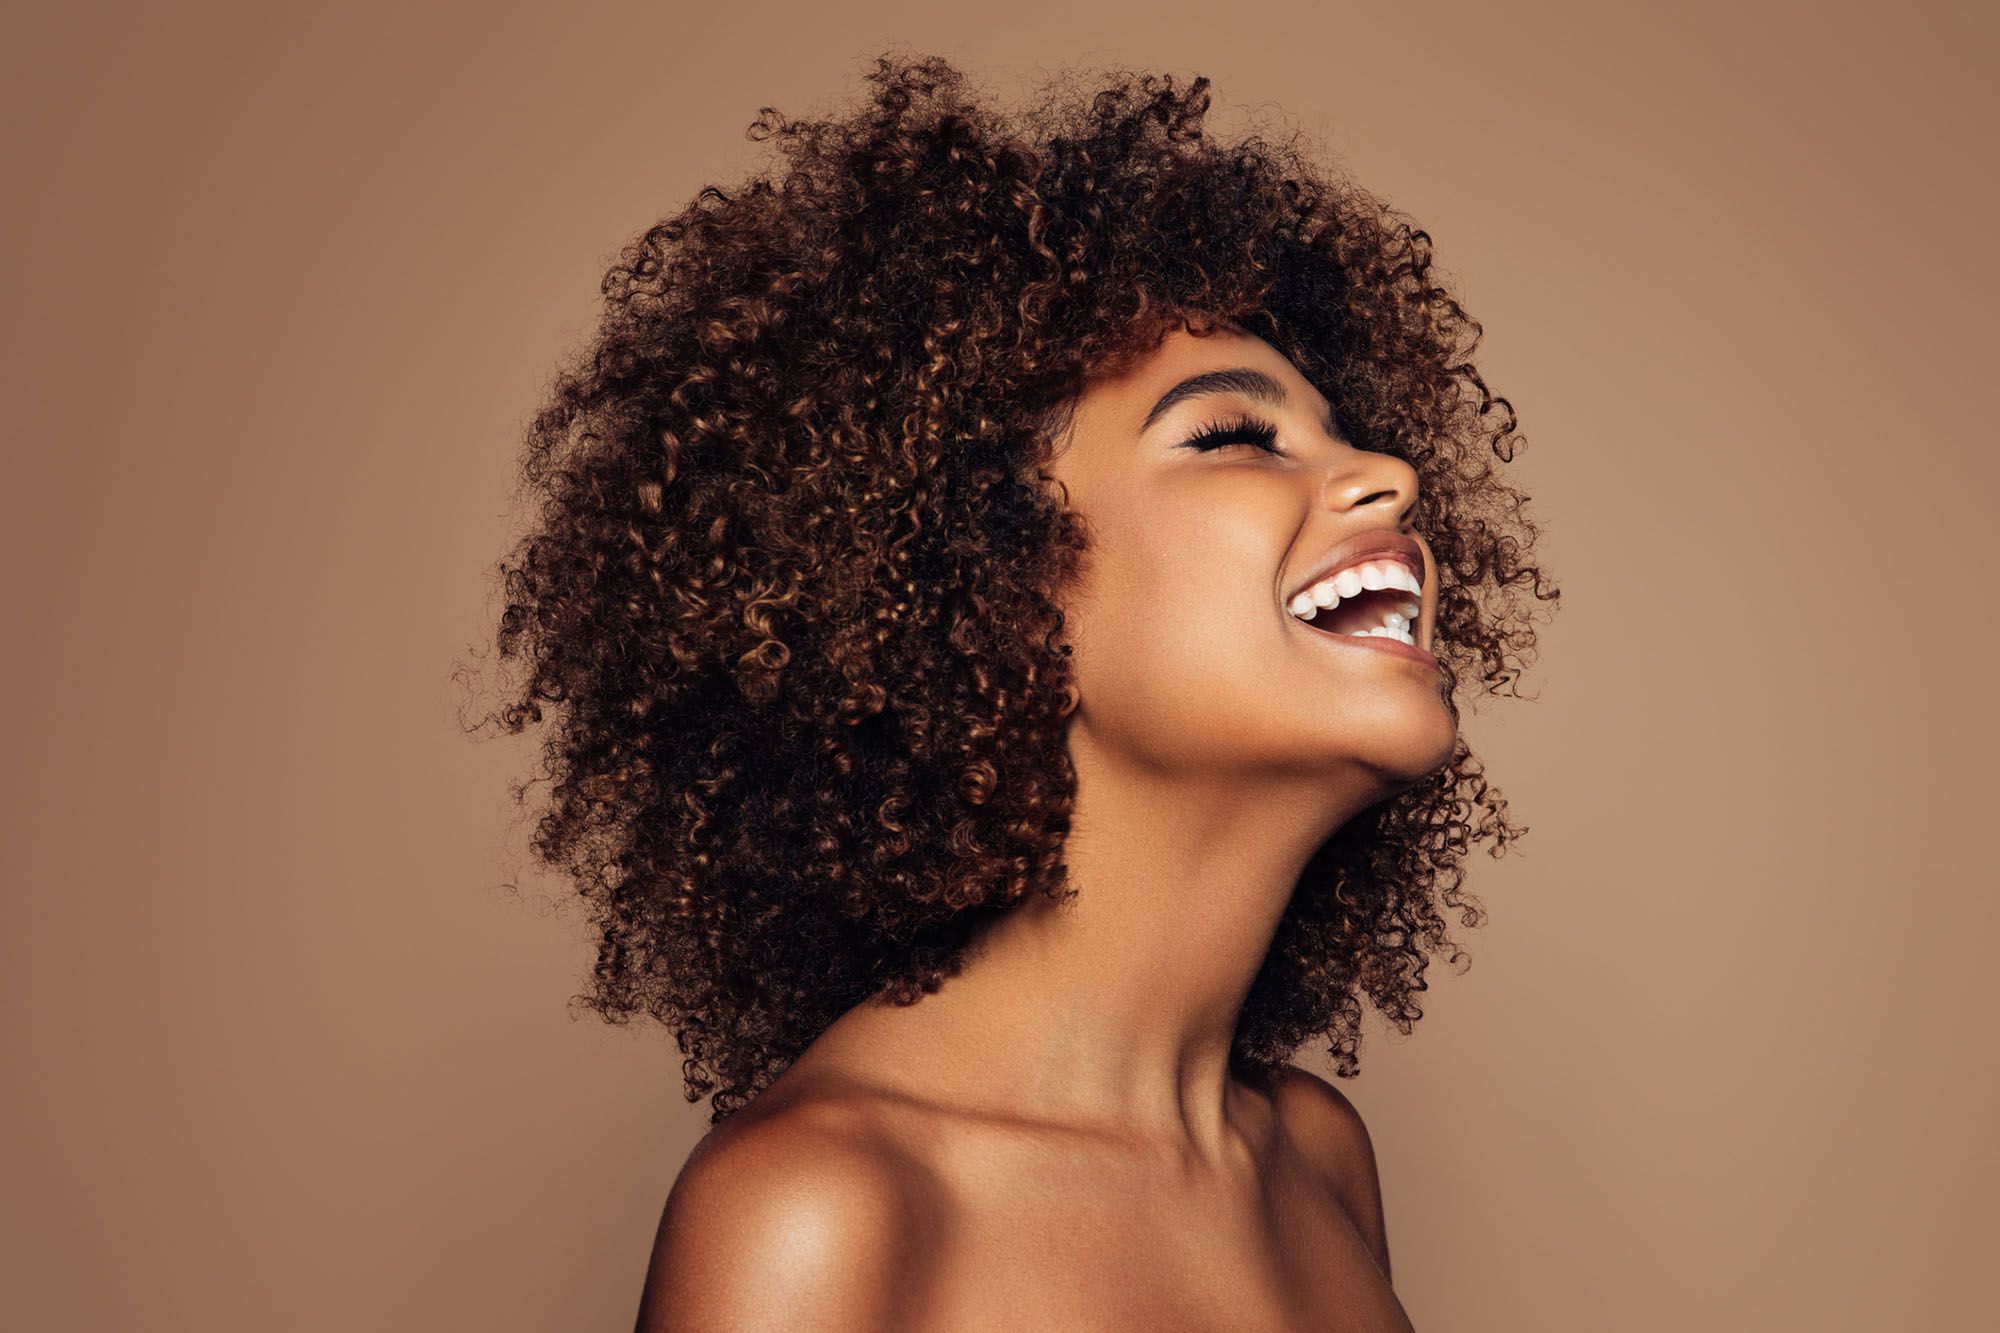 Lachende, freizügige Frau mit Afro vor braunem Hintergrund